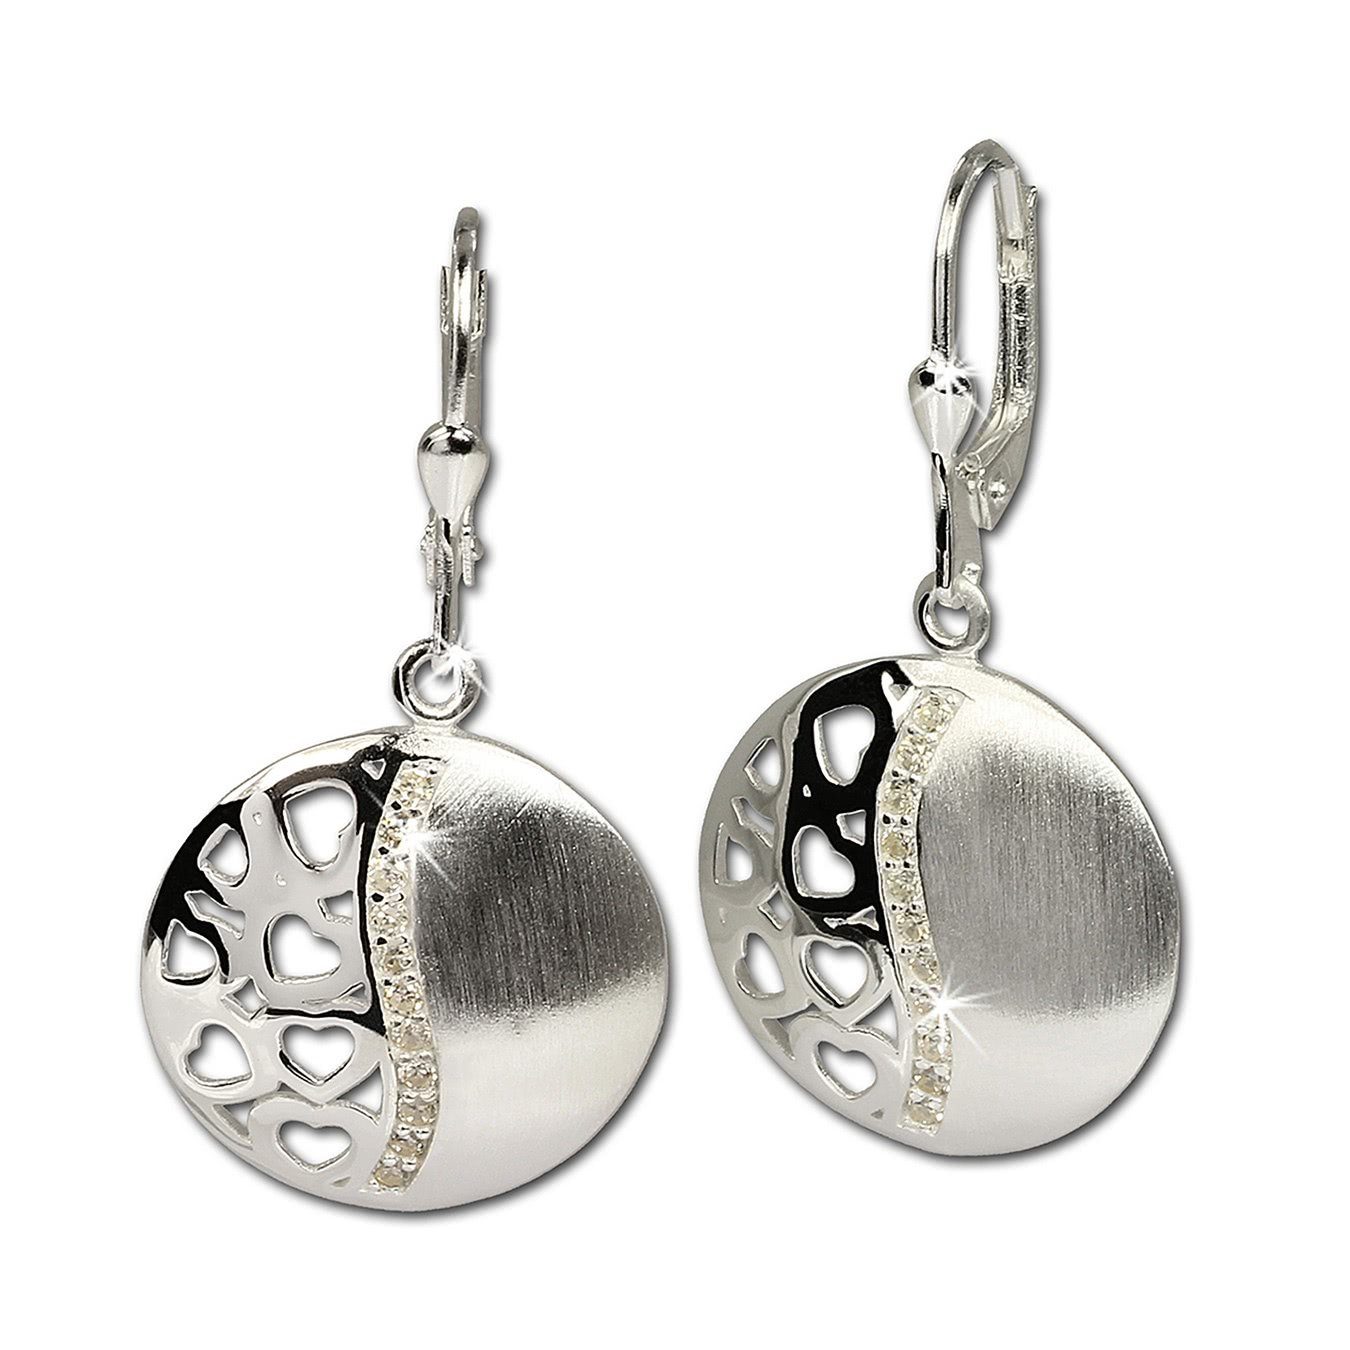 SilberDream Paar Ohrhänger »SDO326 SilberDream Ohrringe Damen 925 Silber« ( Ohrhänger), Damen Ohrhänger Herzen aus 925 Sterling Silber, Farbe: silber,  weiß online kaufen | OTTO